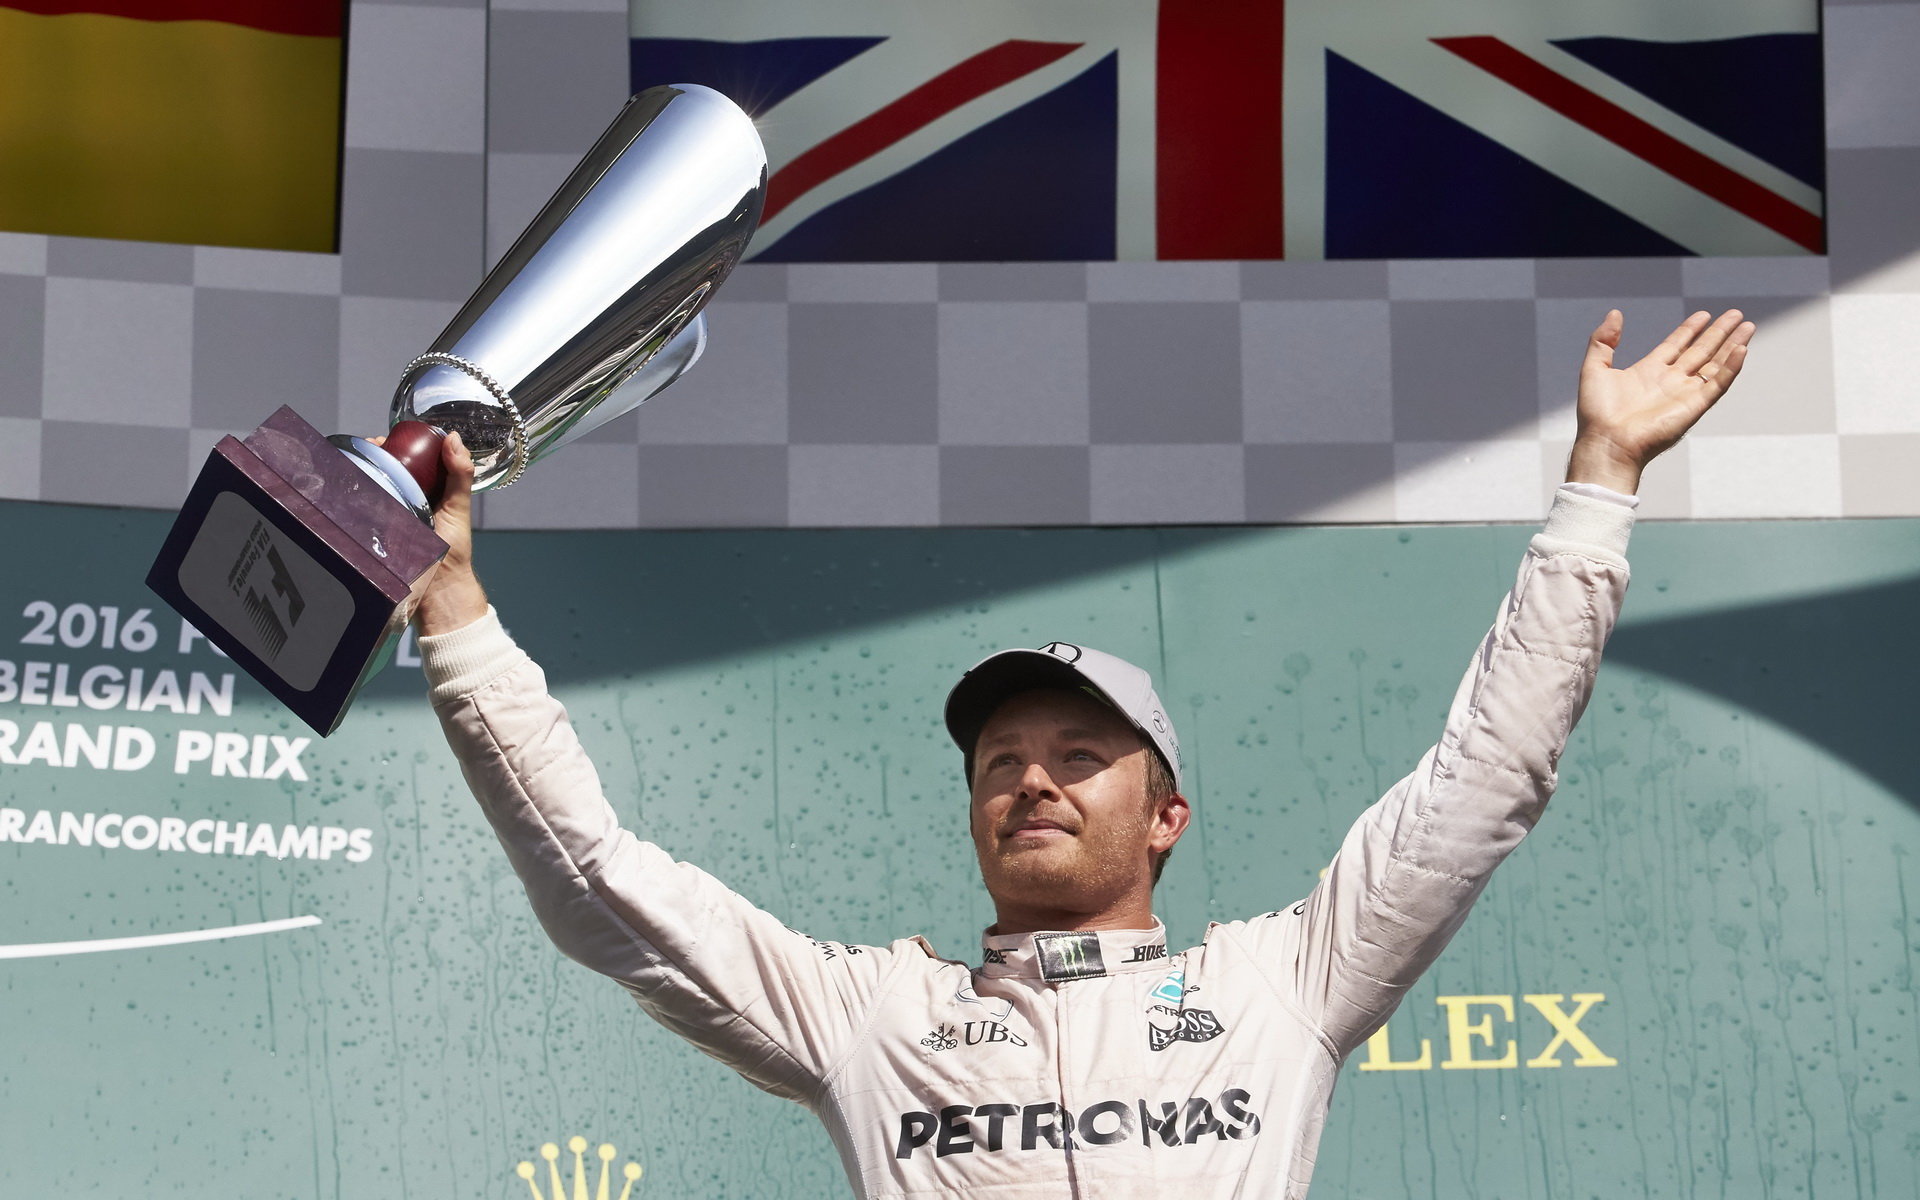 Nico Rosberg by ke konci sezóny mohl získat výhodu v podobě dalšího vylepšení pohonné jednotky